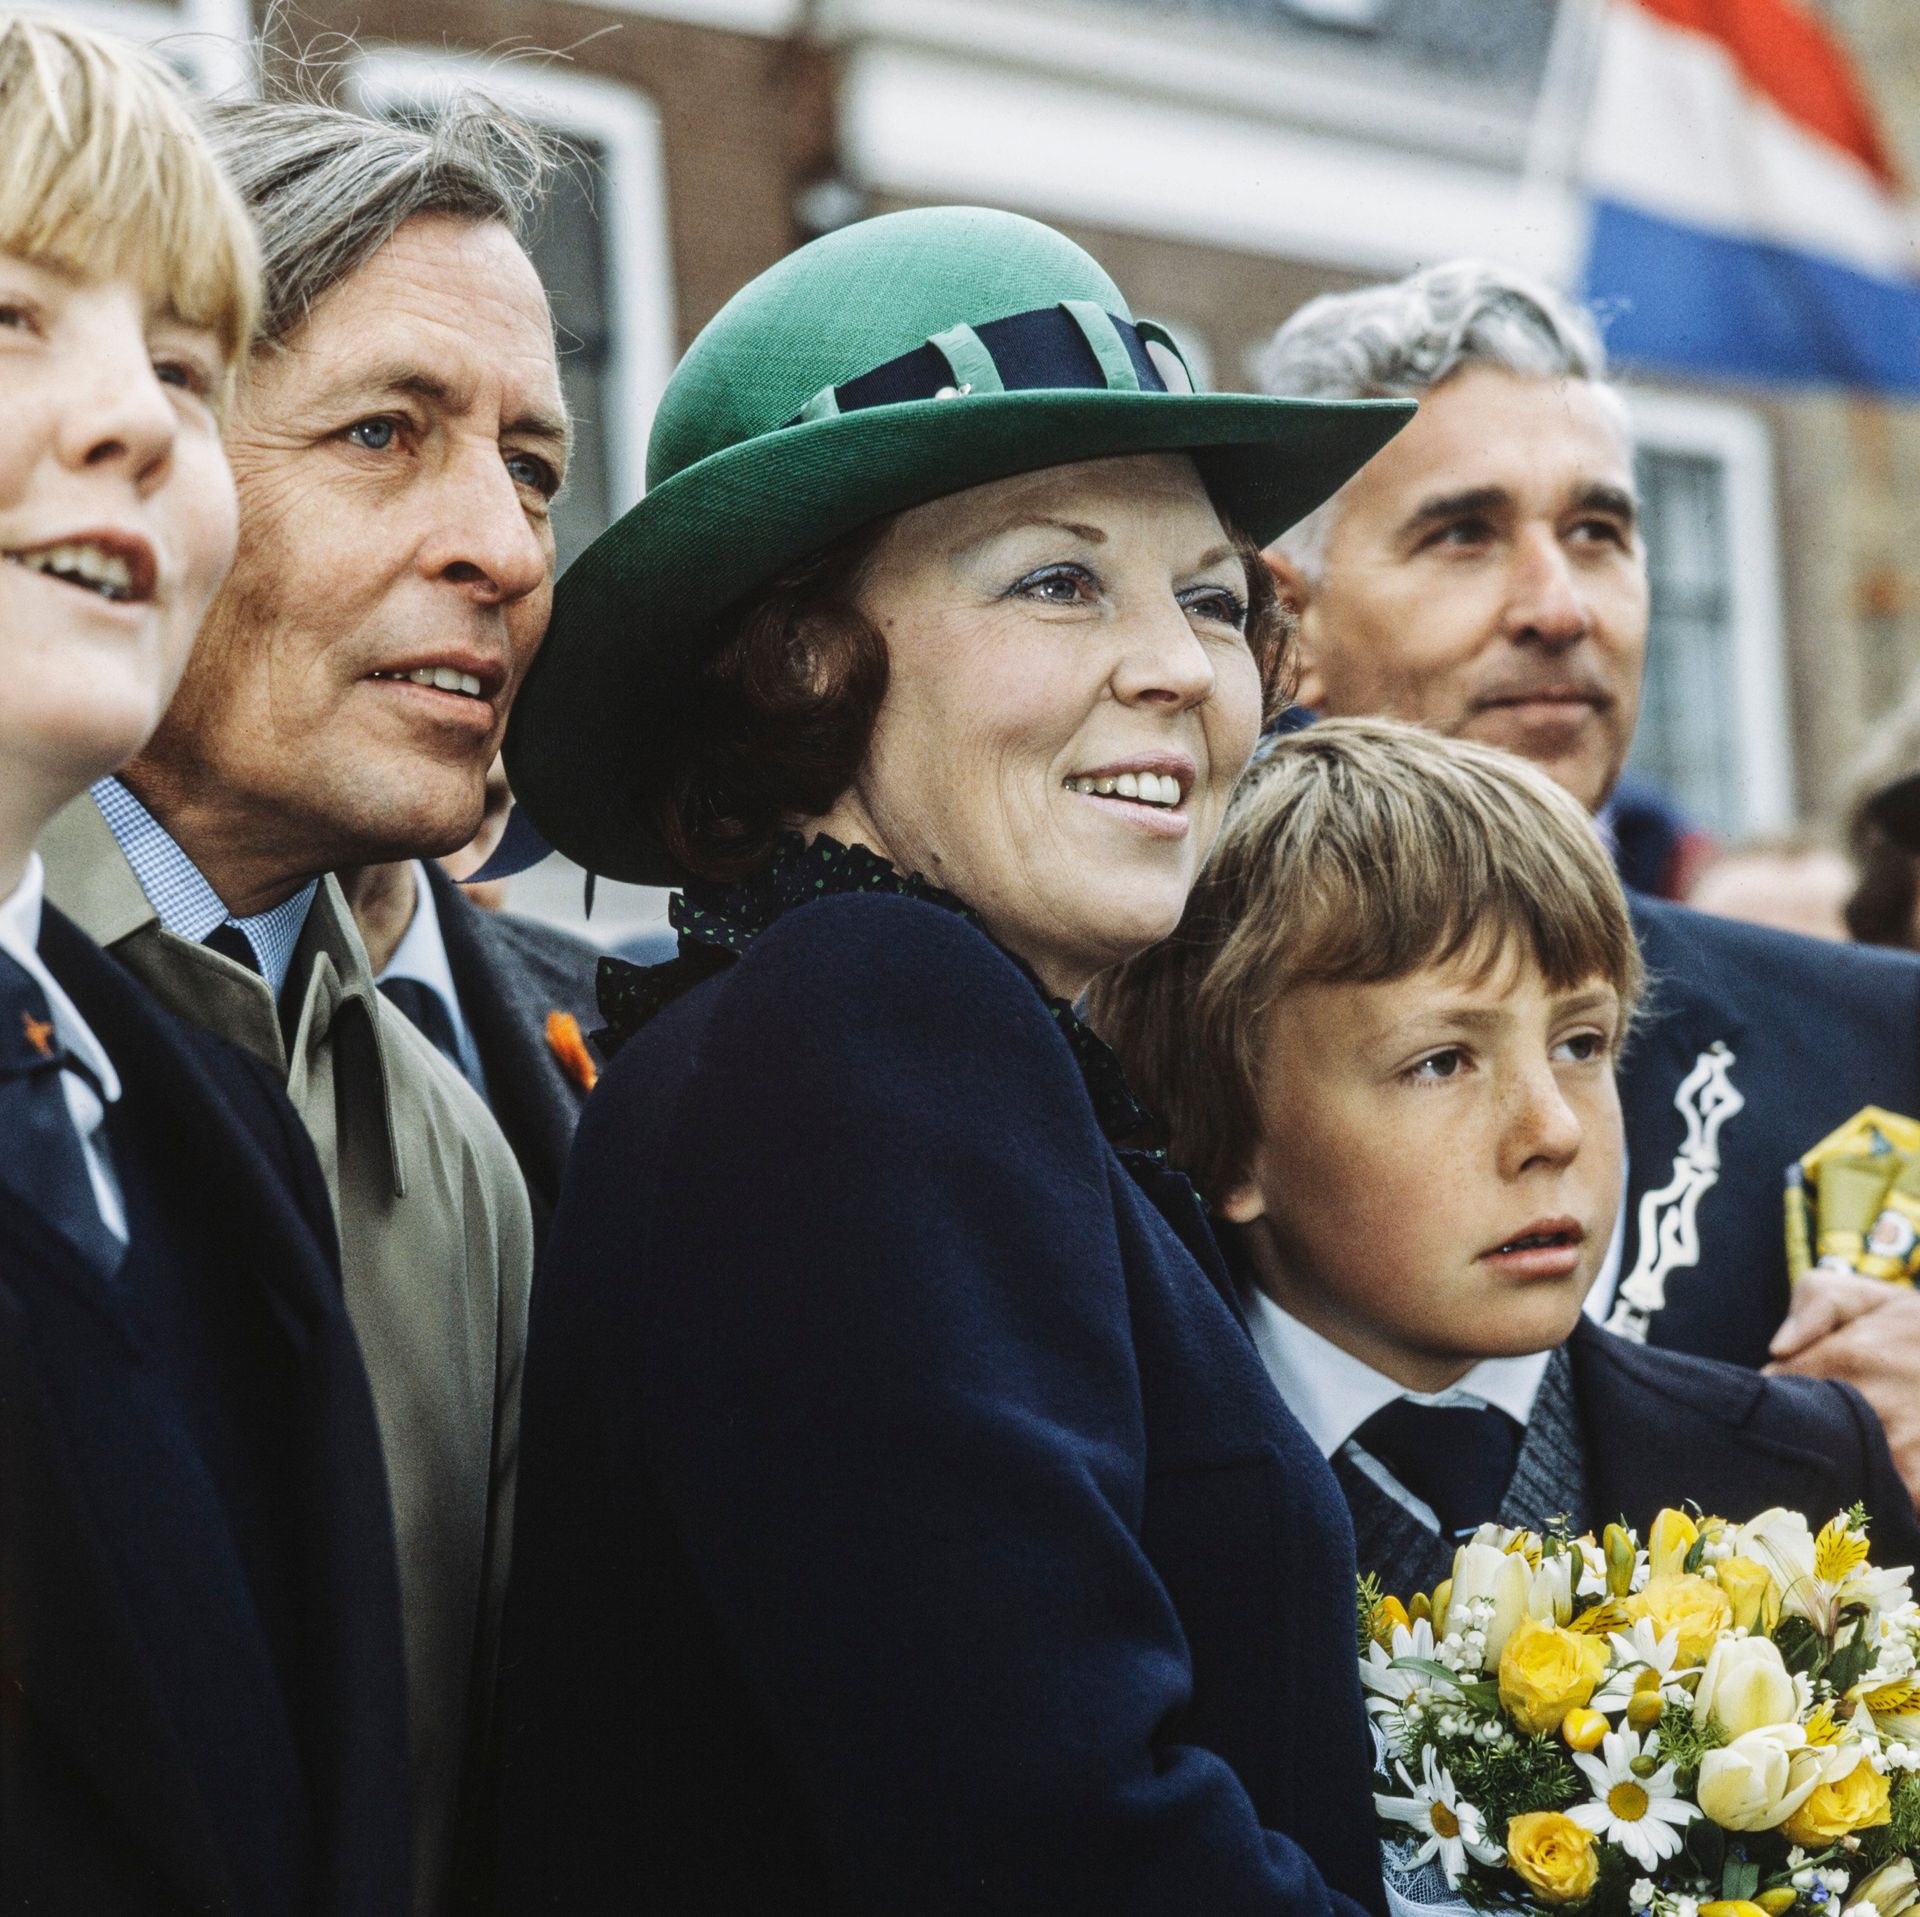 Koninginnedag 1982 in Harlingen en Zuidlaren. Op de foto zijn ook koning Willem-Alexander en prins